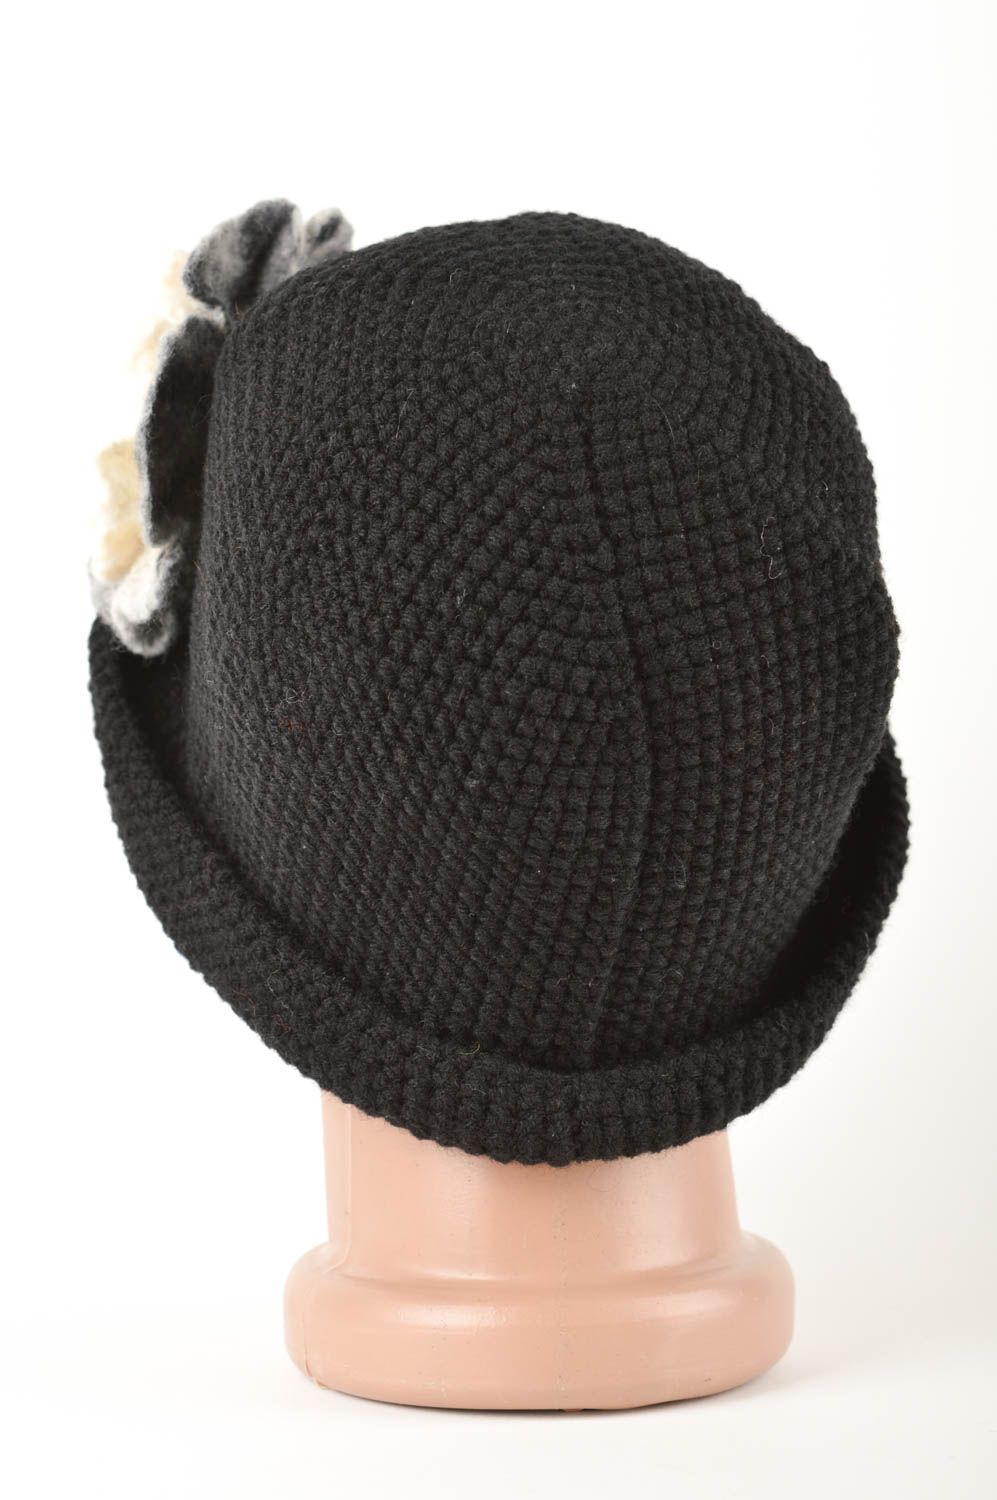 Chapeau chaud Bonnet tricot fait main Vêtement femme hiver noir laine naturelle photo 5